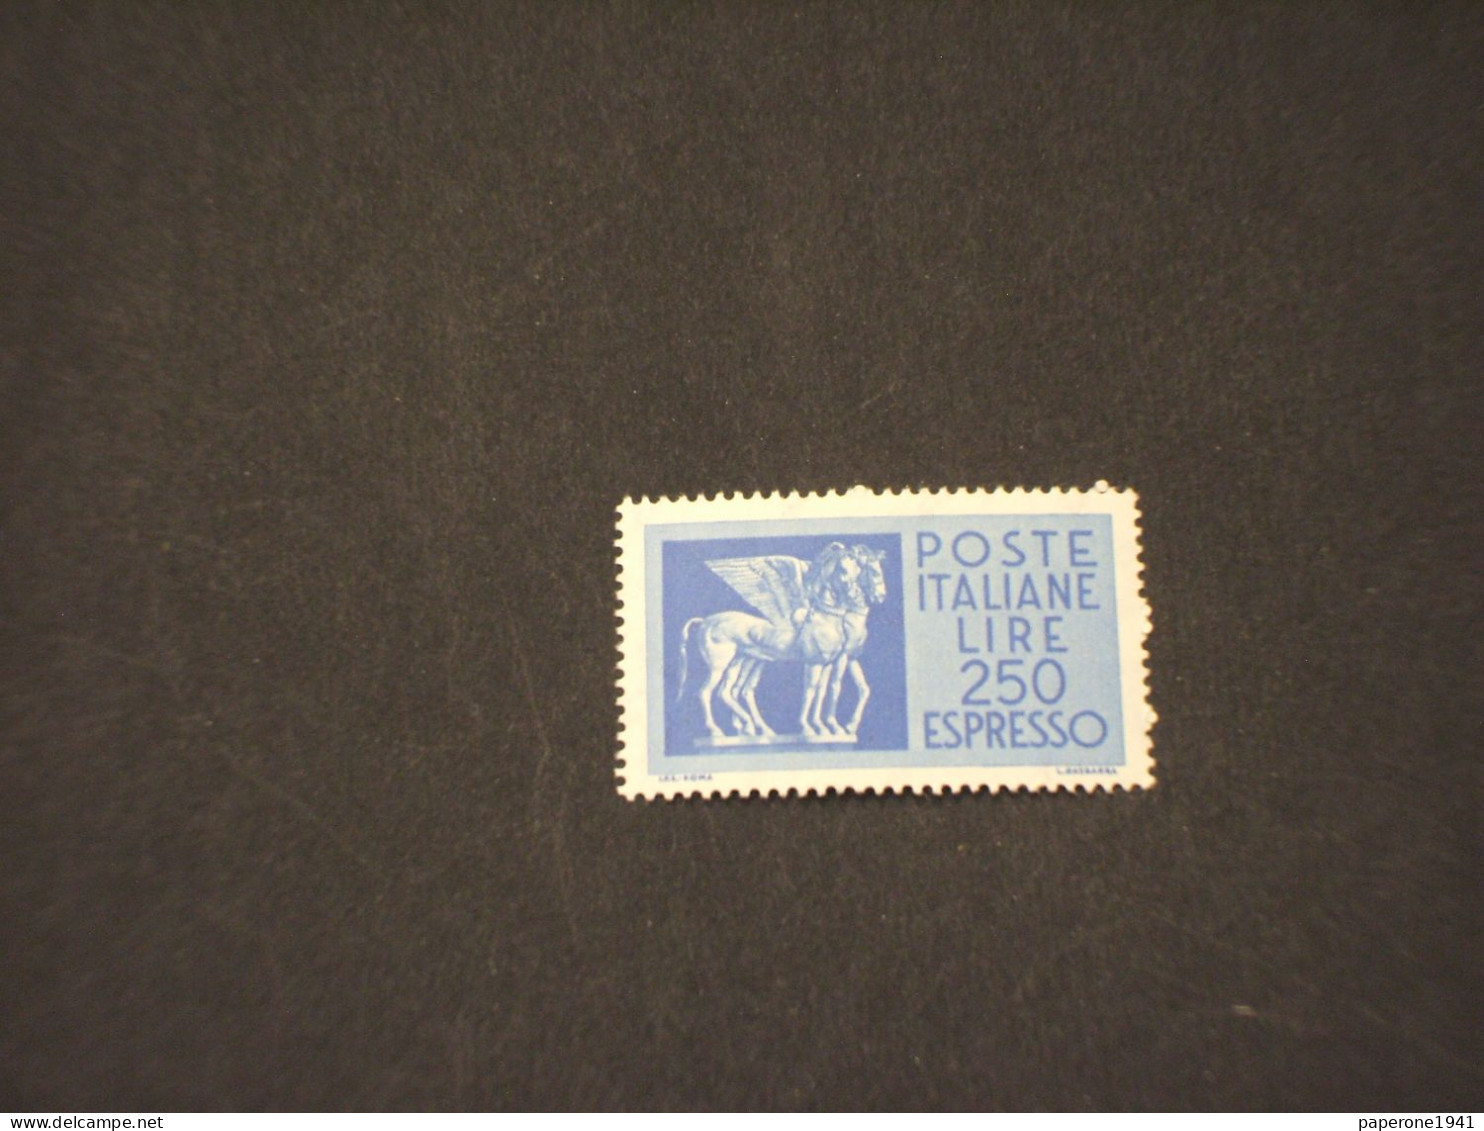 ITALIA REPUBBLICA - ESPRESSO - 1968/75 CAVALLO ALATO L. 250 - NUOVO(++) - Express/pneumatic Mail